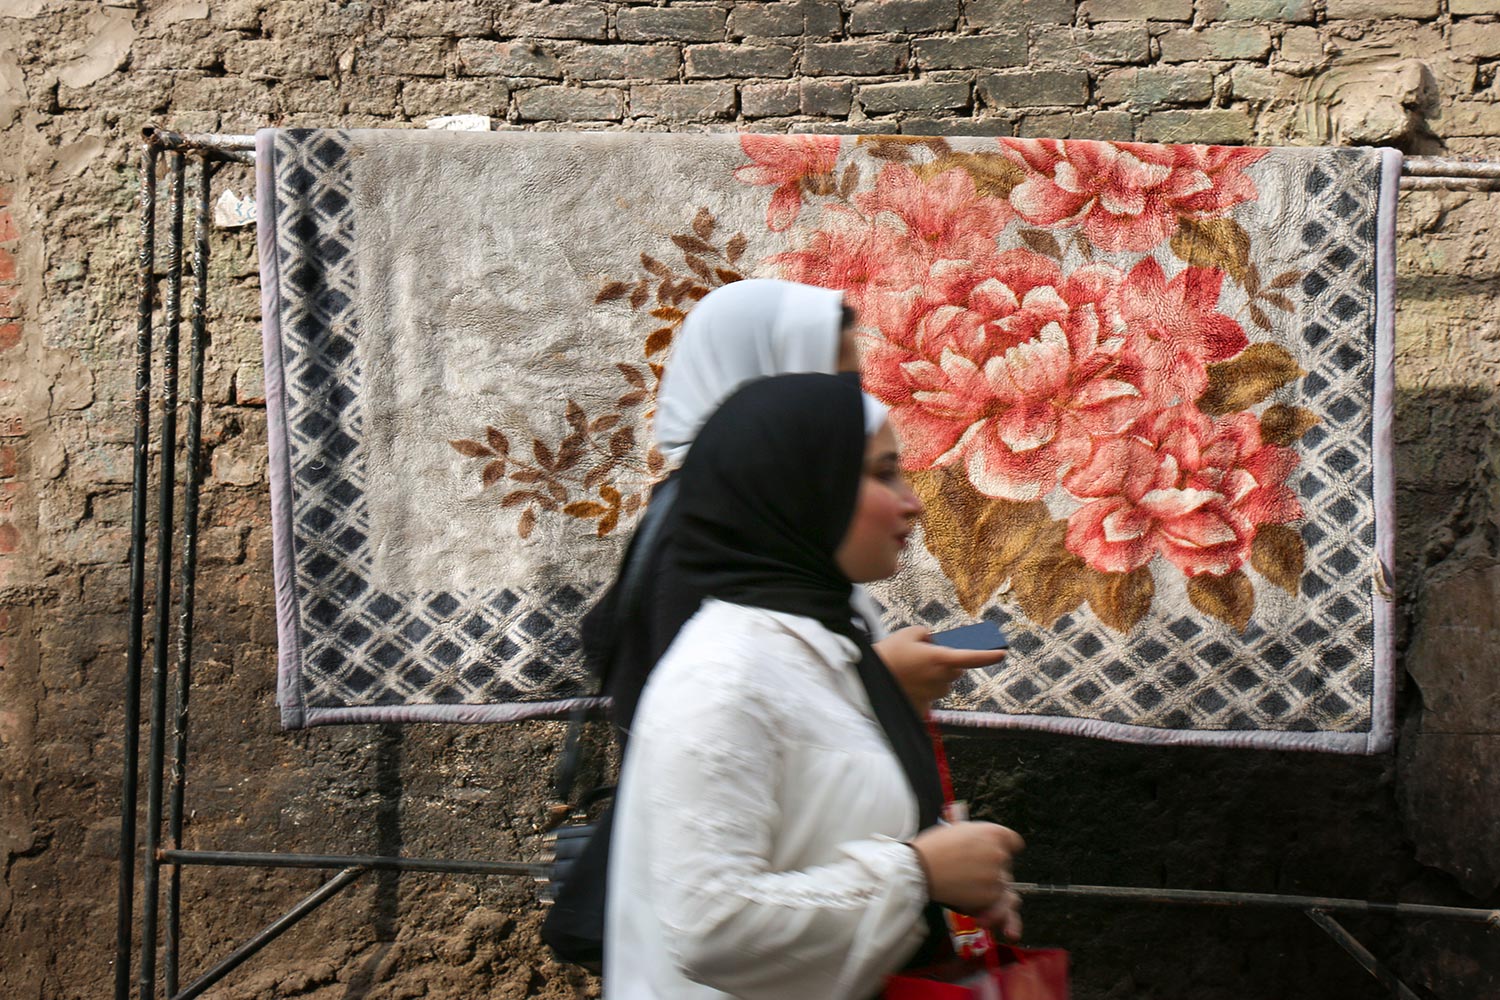 Femmes, Scène de rue, Le Caire, Égypte / Women, Street life, Cairo, Egypt